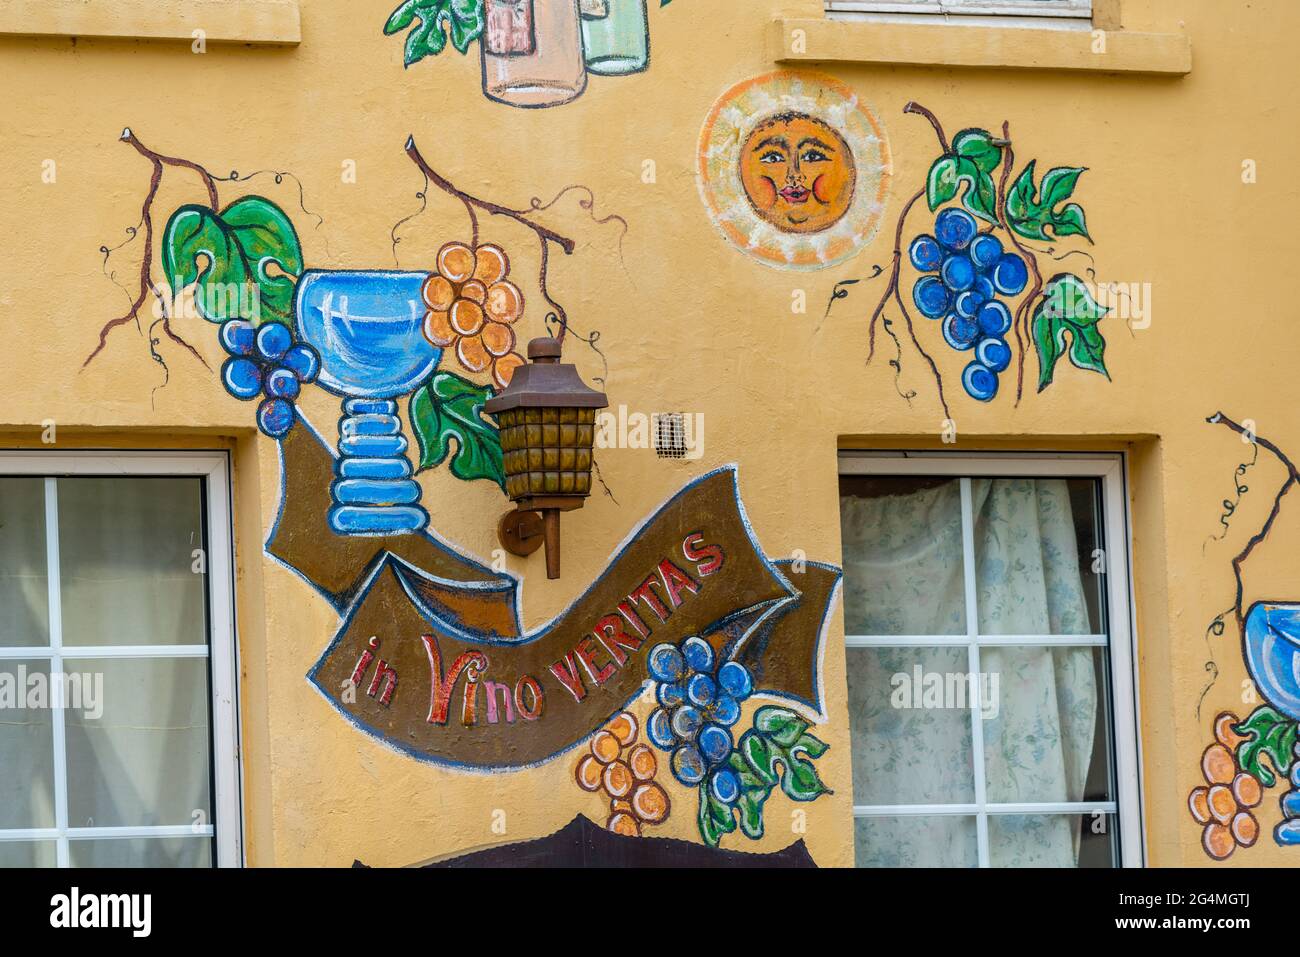 Hauswandmalerei mit lateinischer Inschrift 'in vino veritas' Wahrheit ist im Wein, historisches Linz auf den Rine Häusern, Rheinland-Pfalz, Deutschland Stockfoto